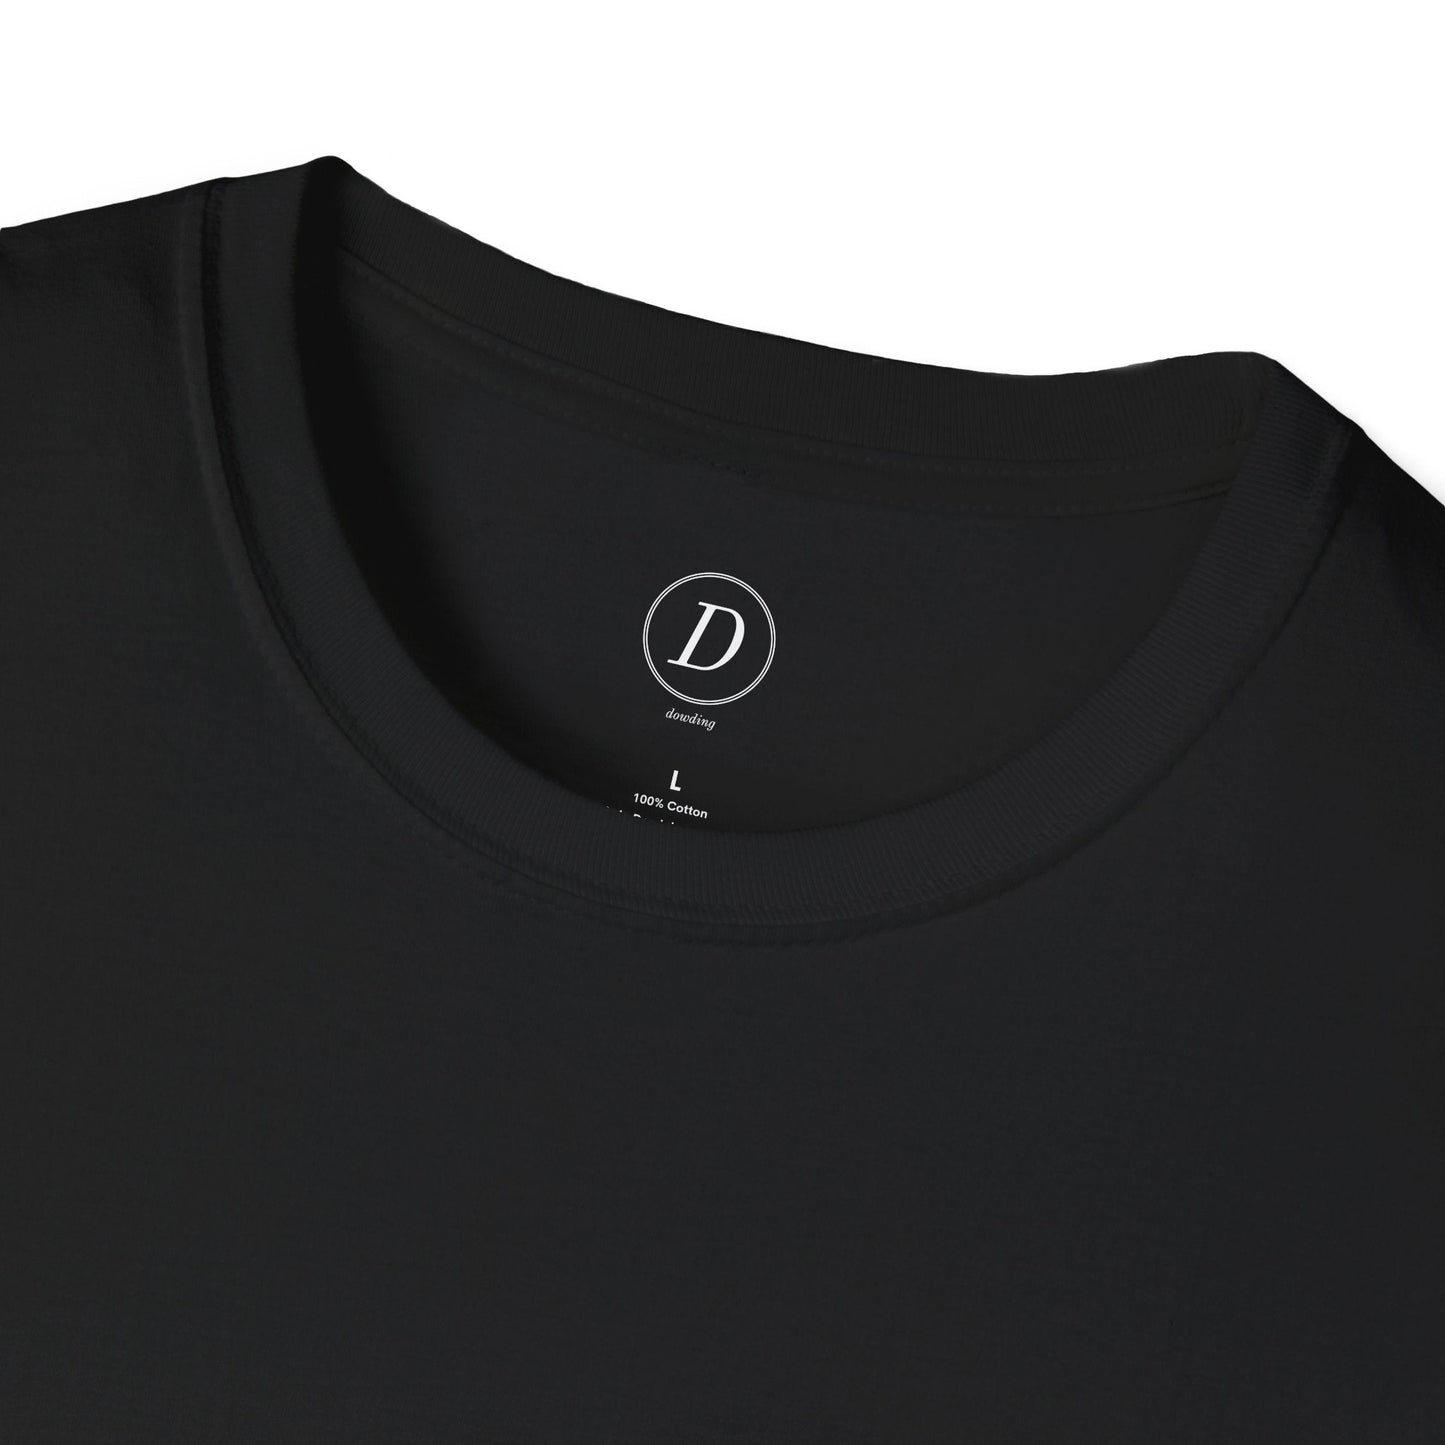 Blank Unisex Softstyle T-Shirt 